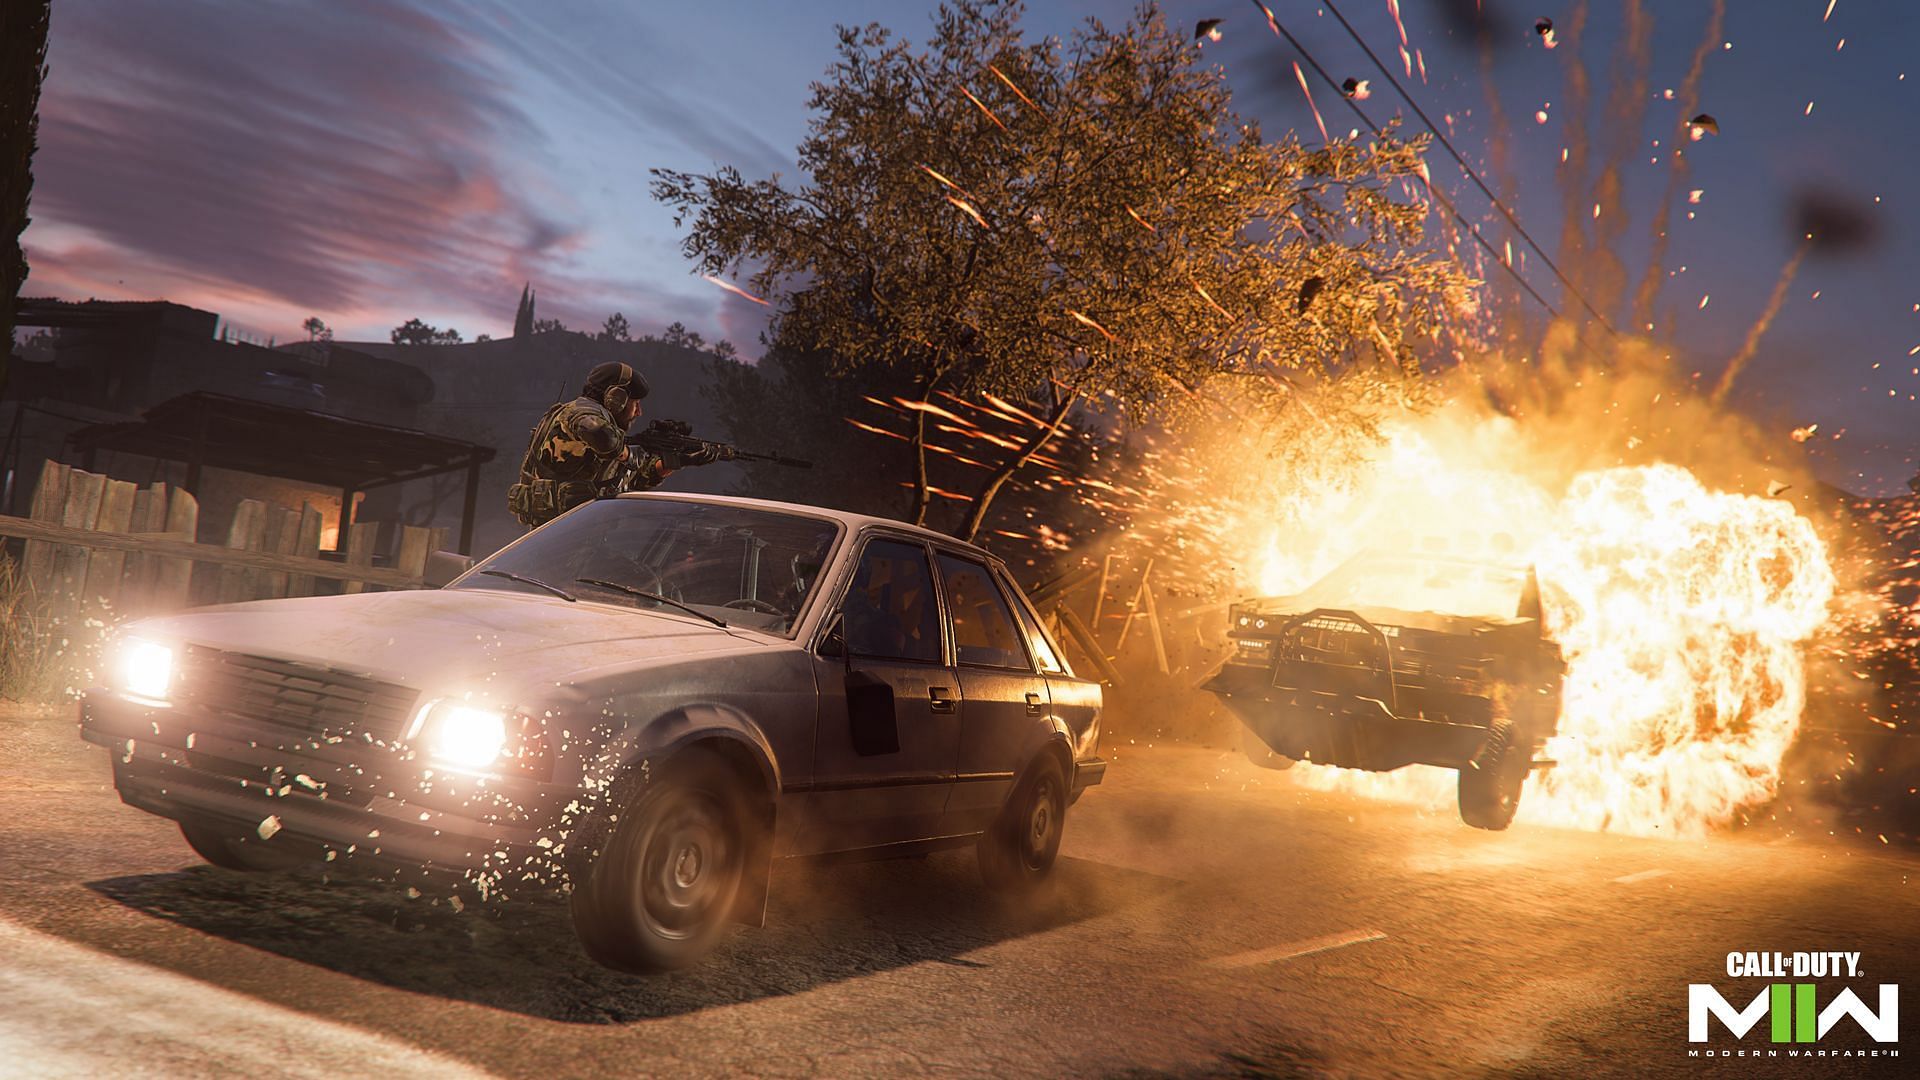 Vehicle Escape (Image via Activision)